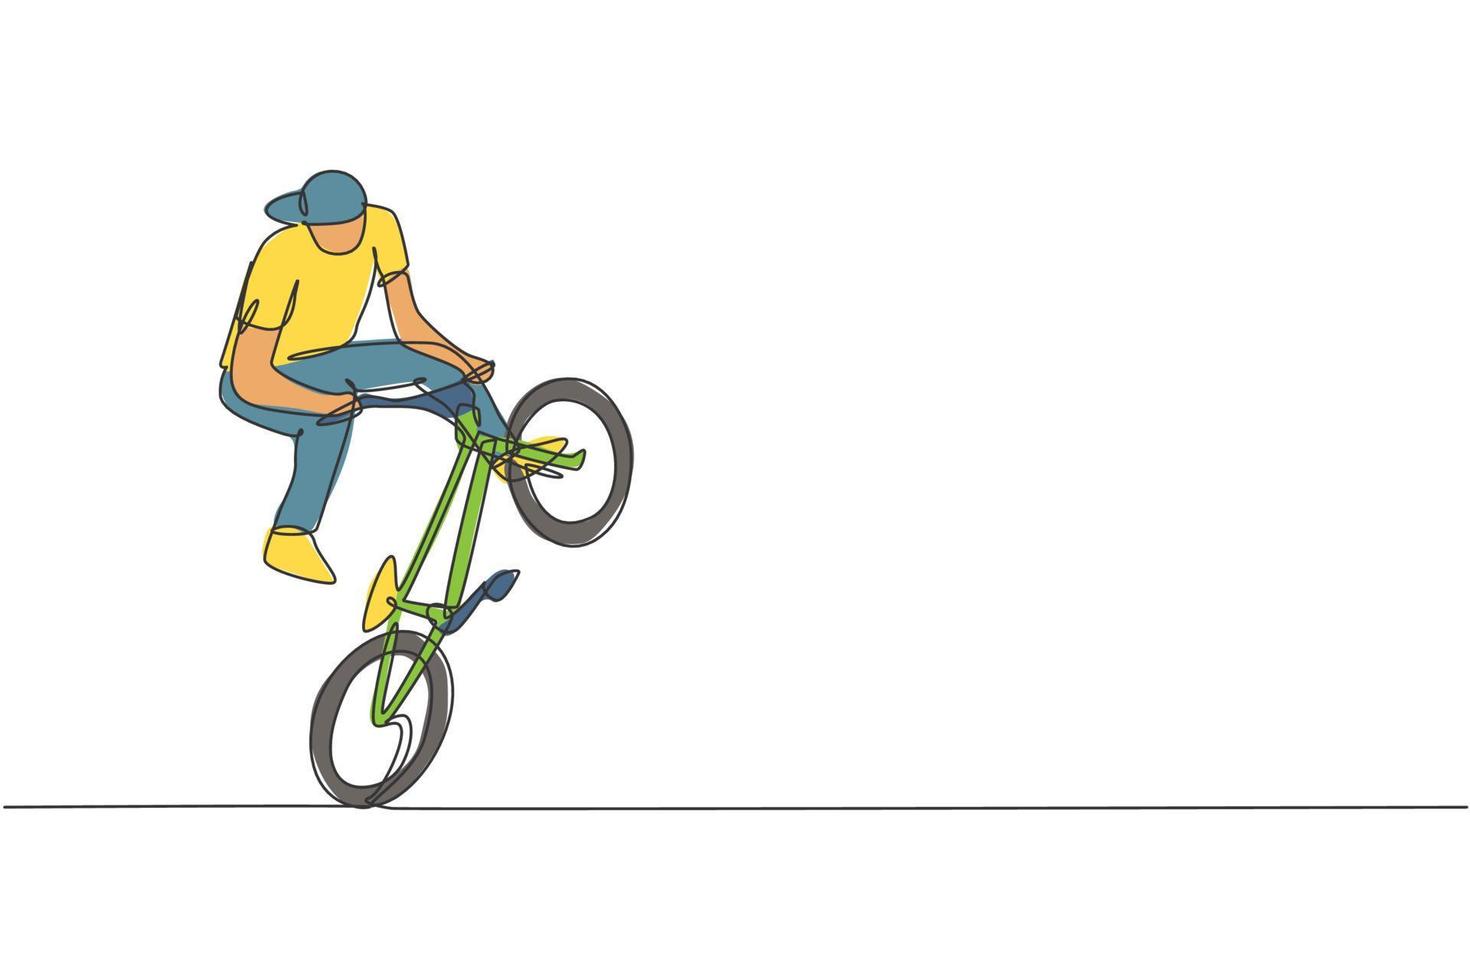 un disegno a linea continua di un giovane ciclista bmx che esegue trucchi pericolosi allo skatepark. illustrazione vettoriale del concetto di sport estremo. design dinamico a linea singola per poster di promozione di eventi